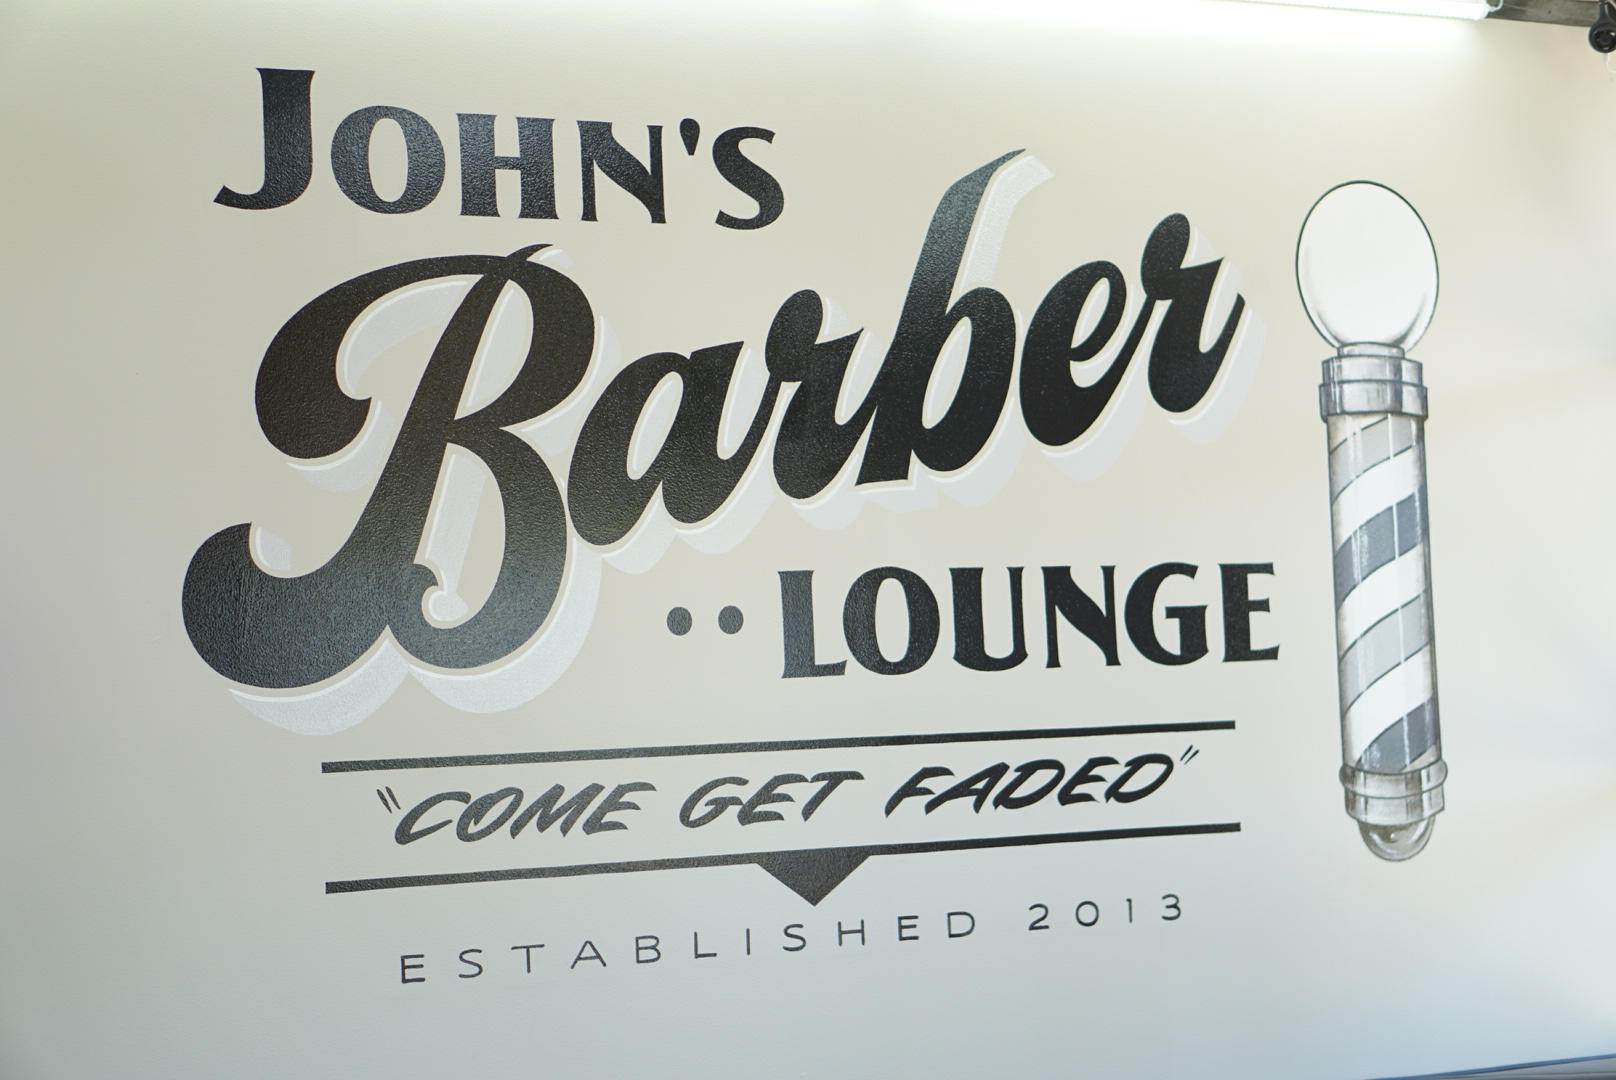 John’s barber lounge